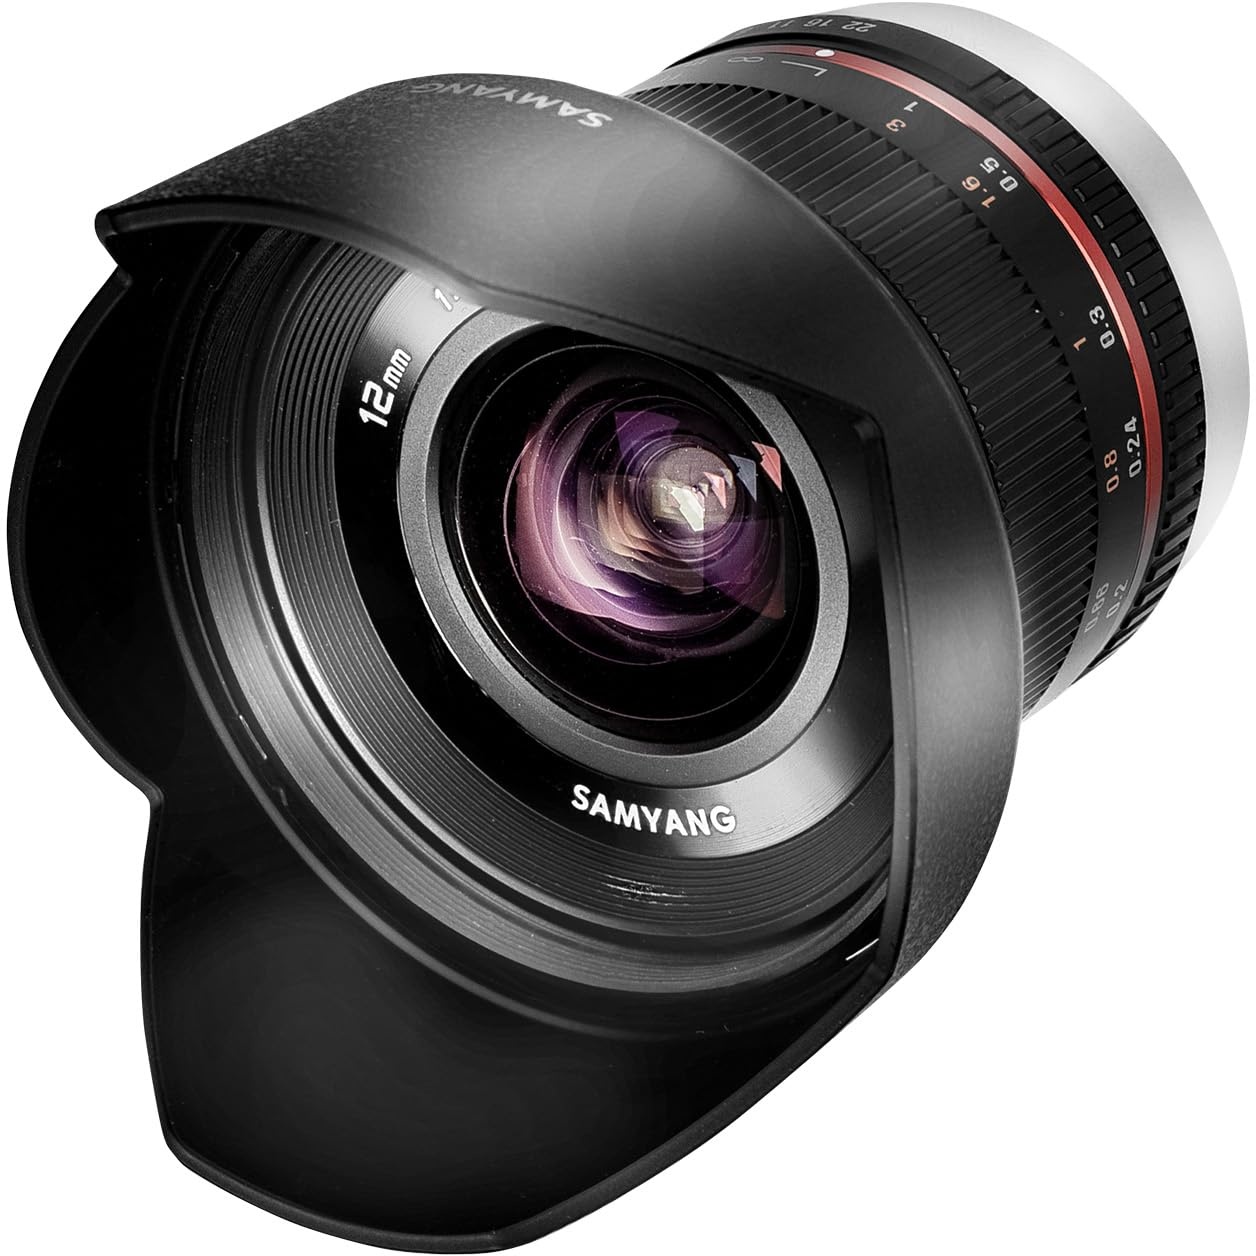 Samyang 12mm F2.0 Canon M schwarz - APS-C Weitwinkel Festbrennweite Objektiv für Canon M, manueller Fokus, für Kamera EOS M6 Mark II, EOS M50, EOS M200, EOS M100, EOS M10, EOS M6 II